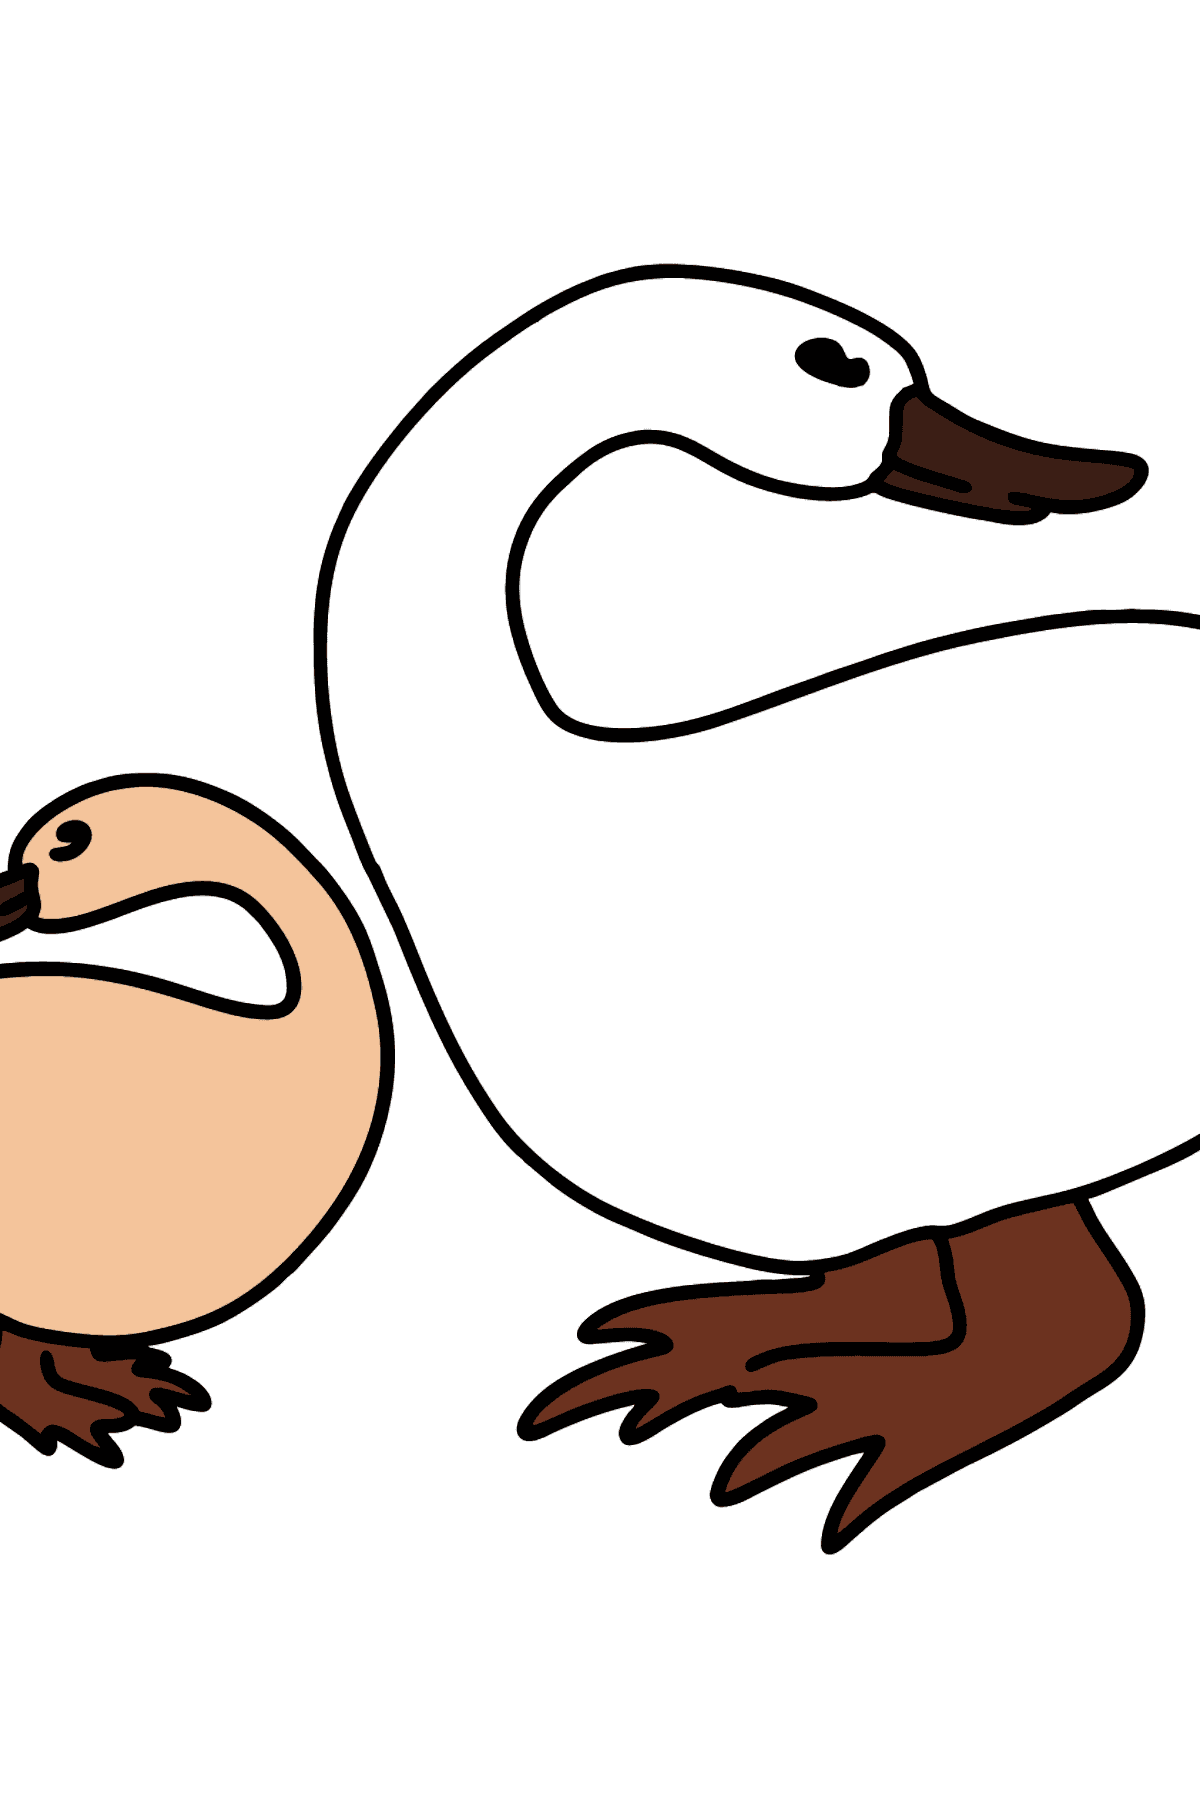 Desenho para colorir de Pato com Patinho - Imagens para Colorir para Crianças